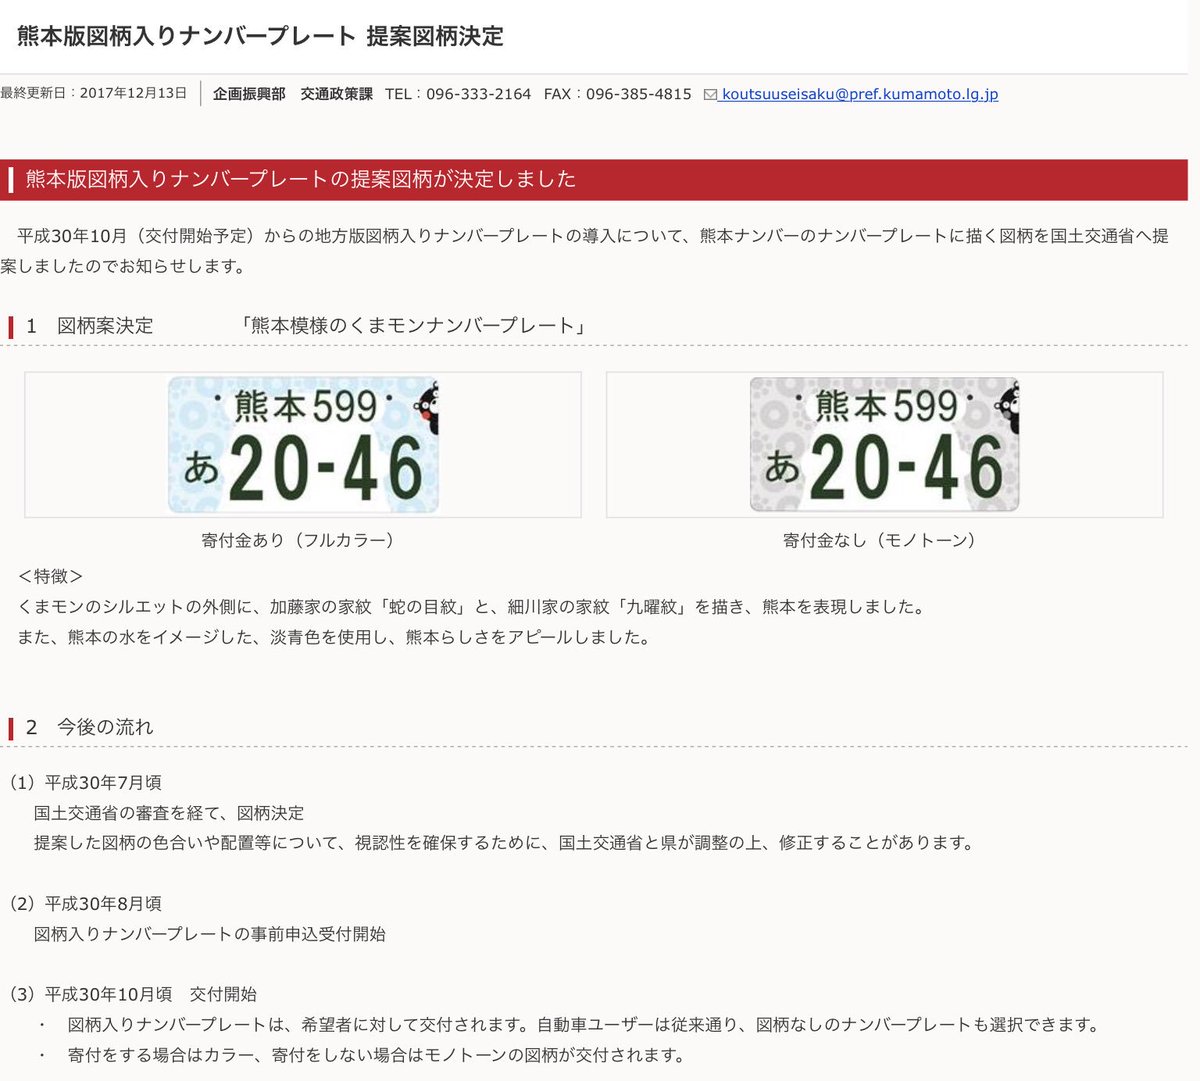 夢浦忍 Twitter પર さっきテレビでご当地イラスト入りナンバープレートのニュースやってたけど 熊本県のナンバープレートは くまだった